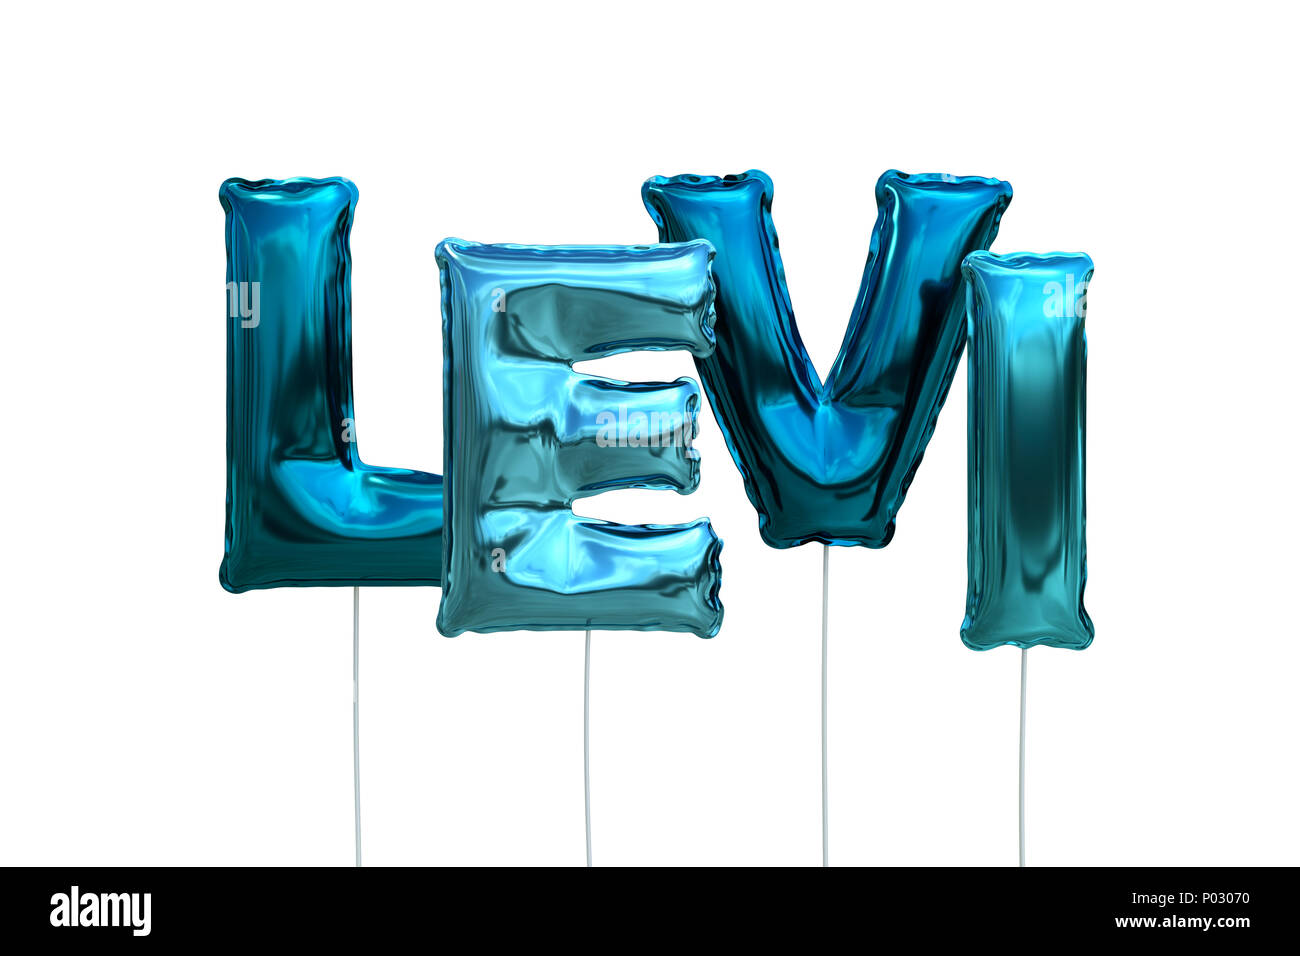 Name Levi aus blauem Aufblasbare Ballone auf weißem Hintergrund  Stockfotografie - Alamy